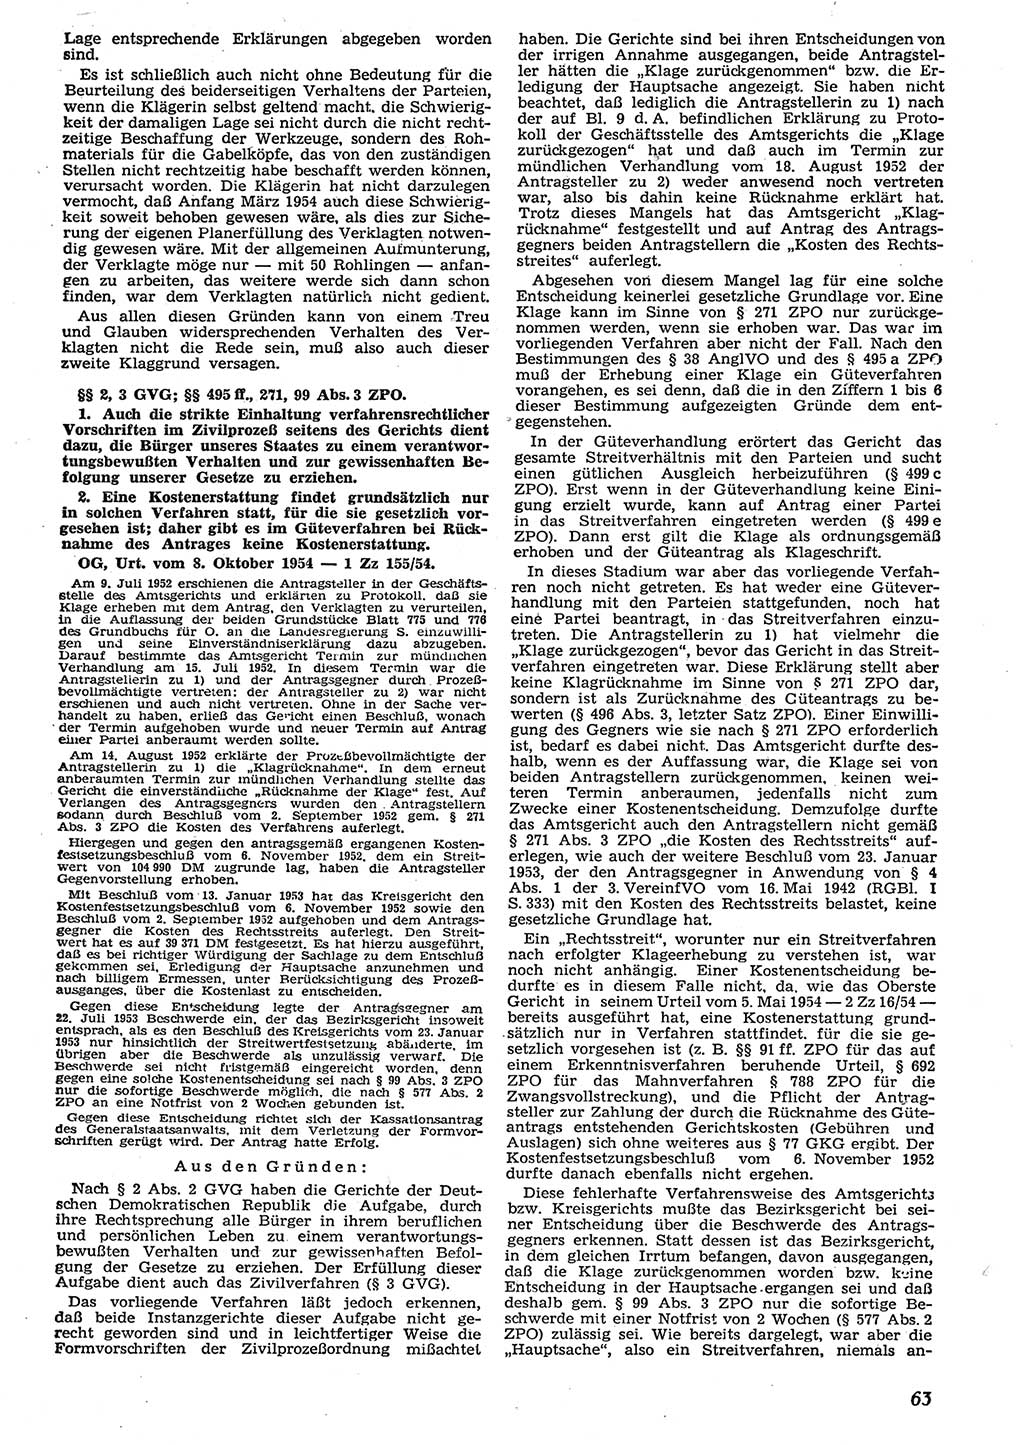 Neue Justiz (NJ), Zeitschrift für Recht und Rechtswissenschaft [Deutsche Demokratische Republik (DDR)], 10. Jahrgang 1956, Seite 63 (NJ DDR 1956, S. 63)